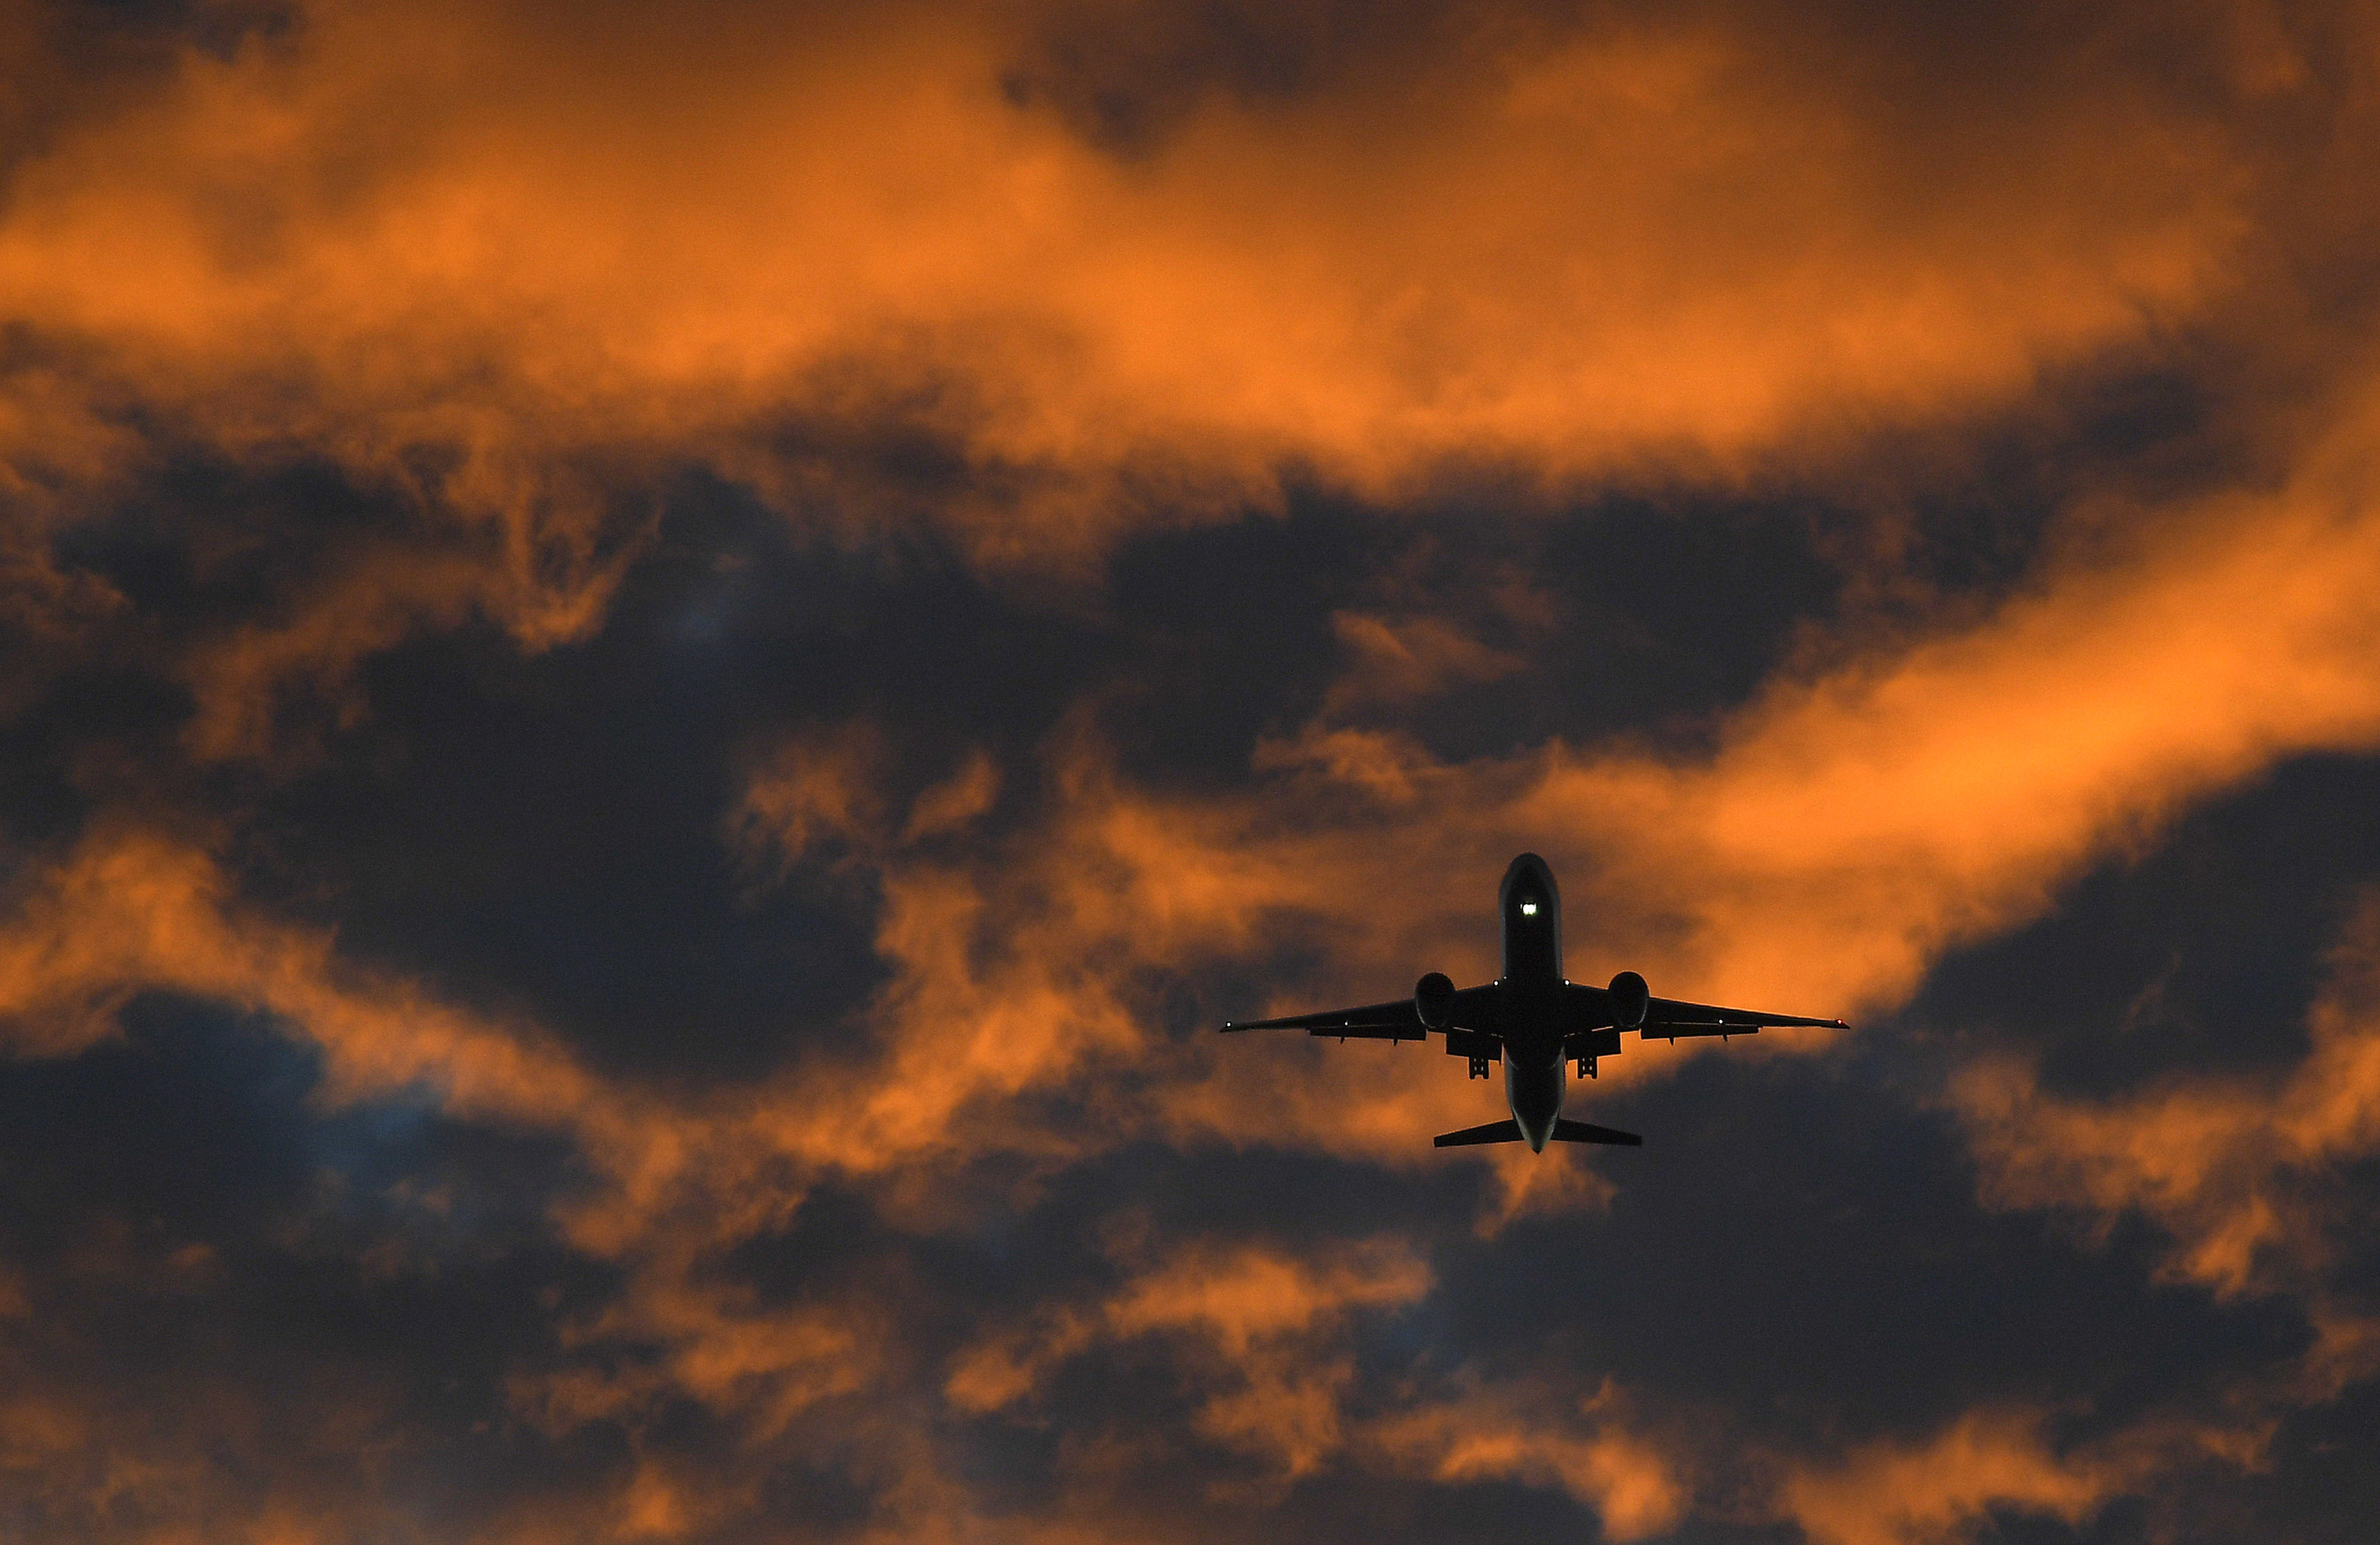 A passenger plane flies towards Heathrow airport at dawn in London, Britain